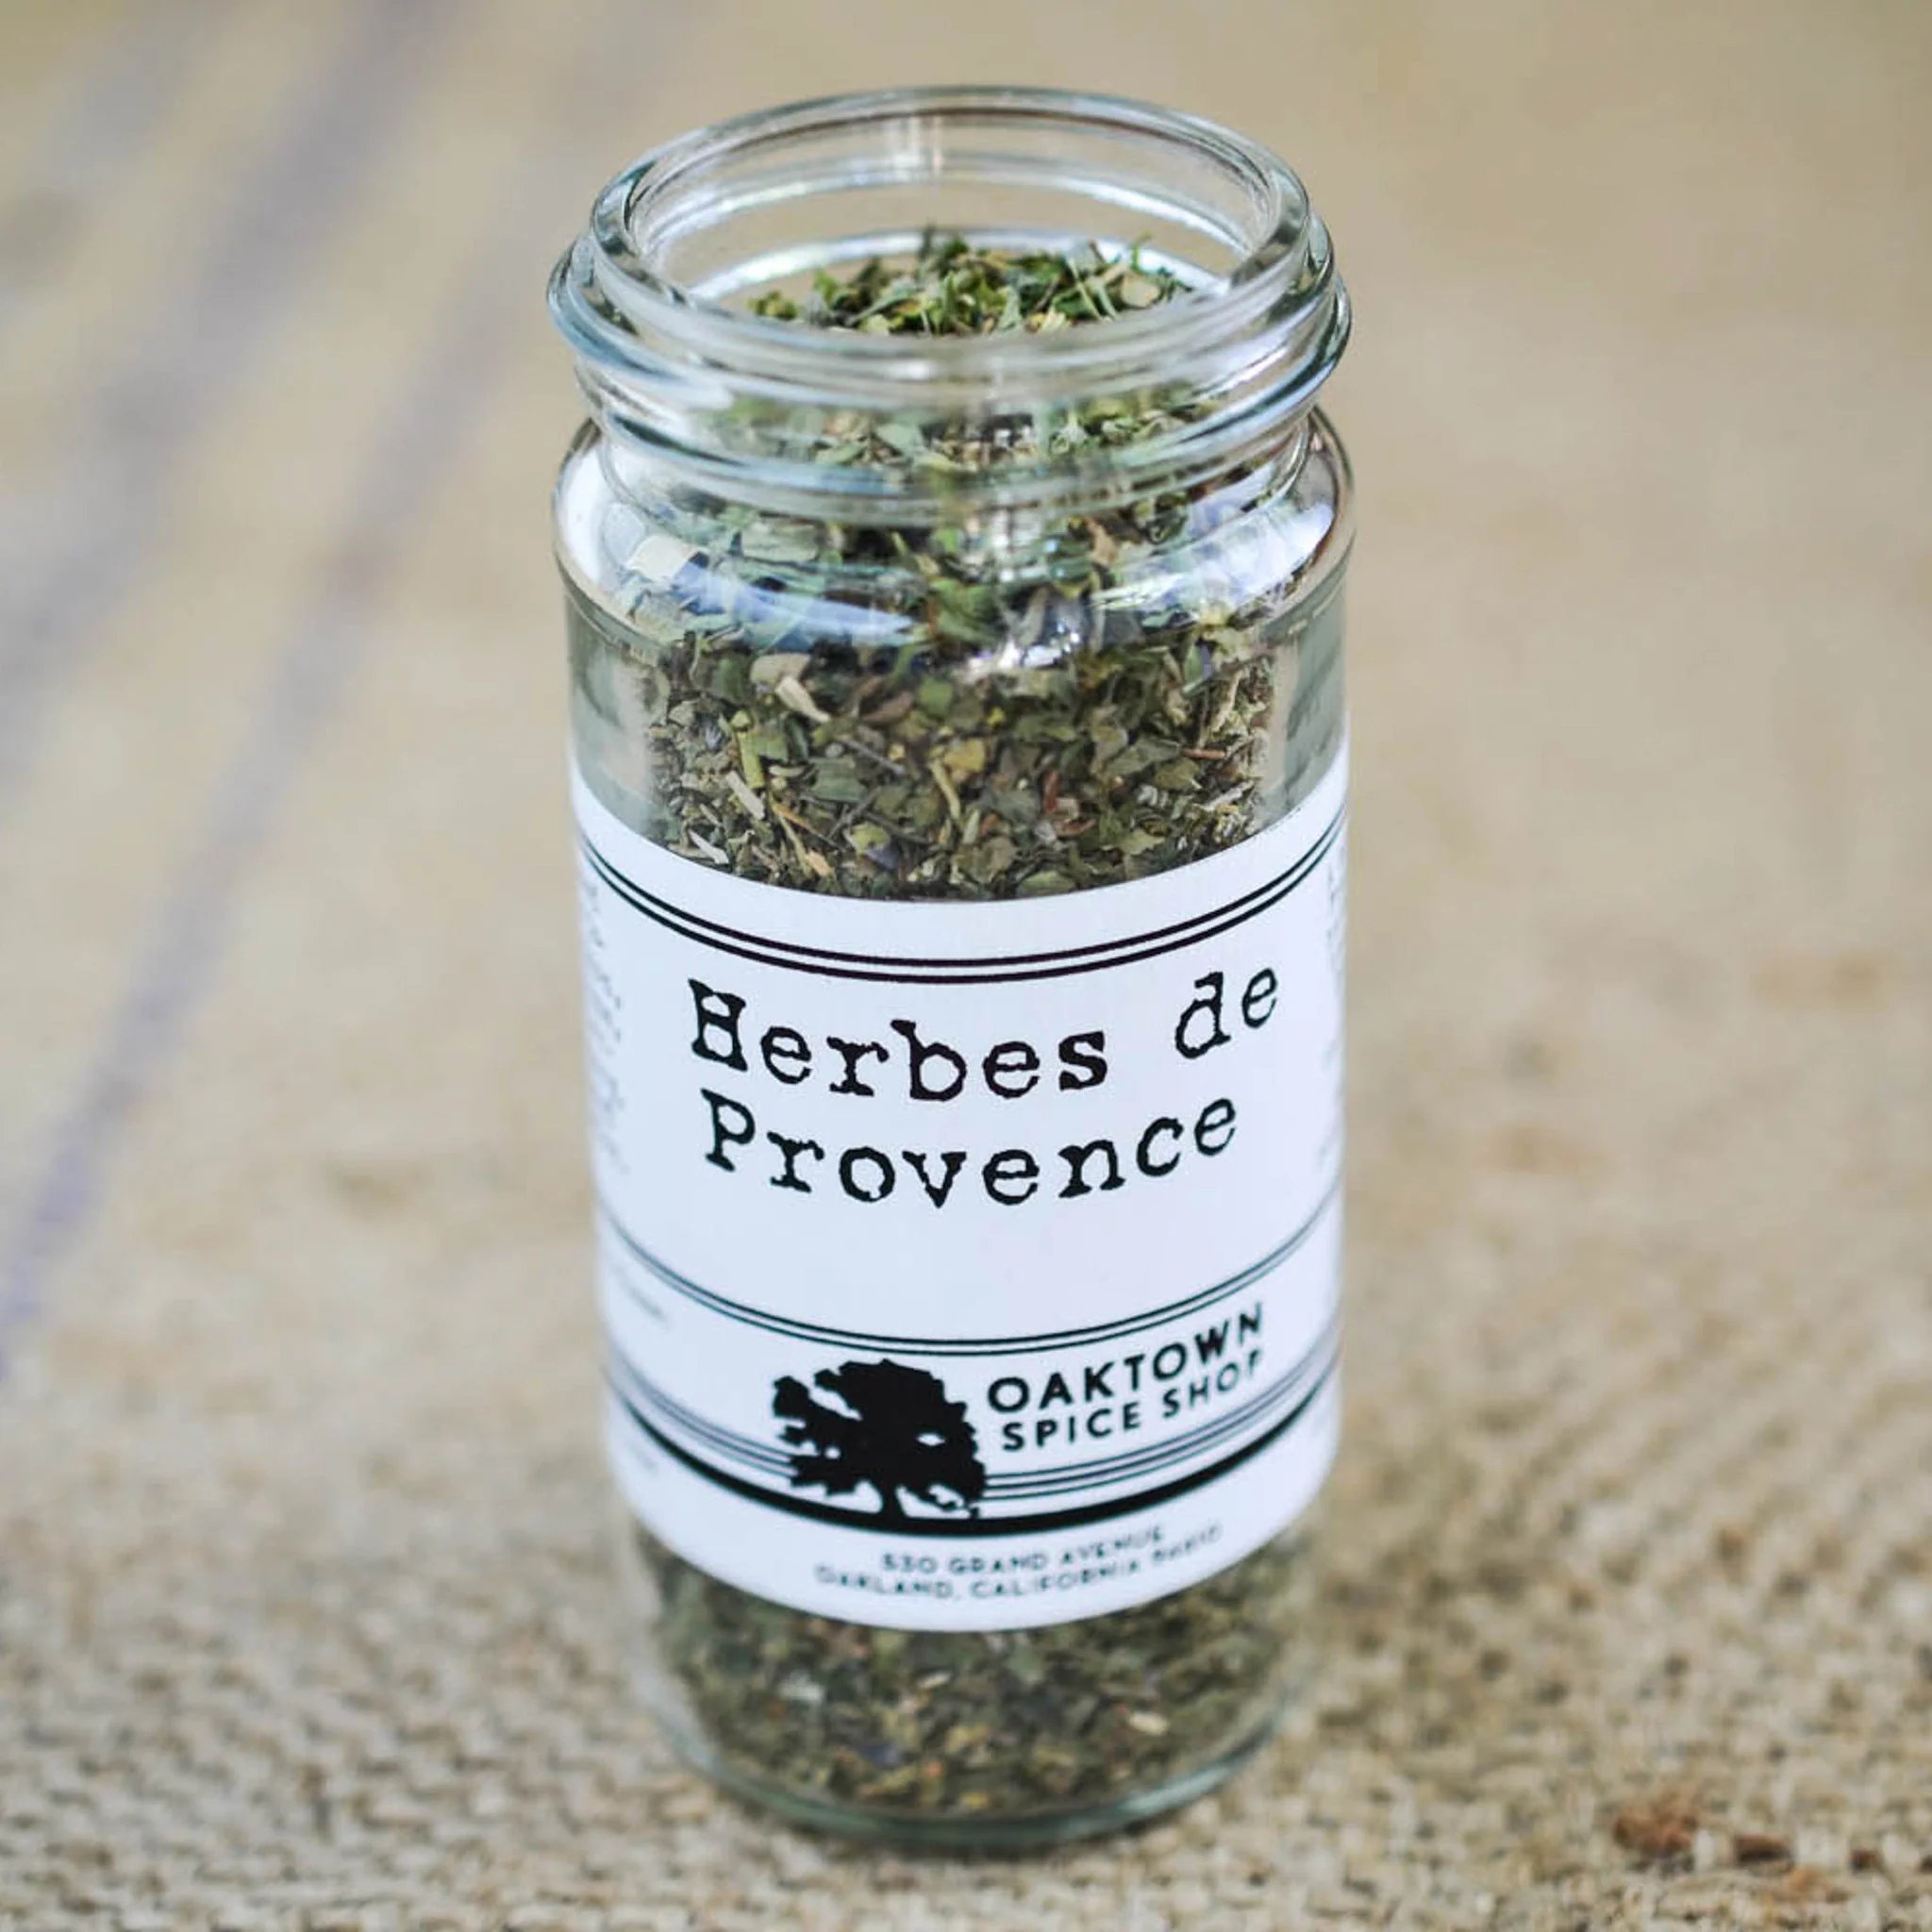 Where To Buy Herbs De Provence